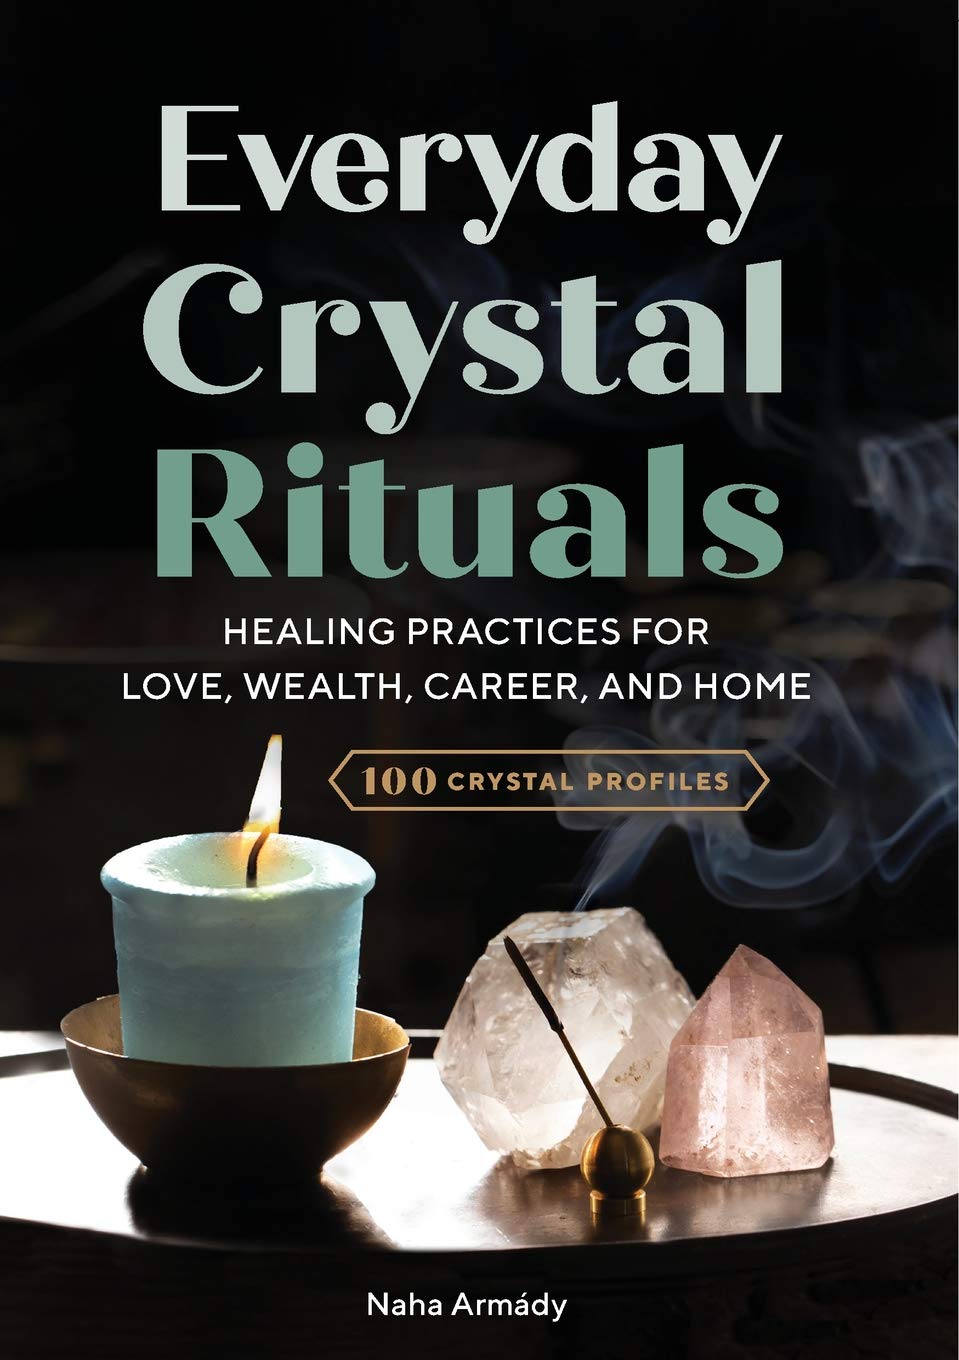 Everyday Crystal Rituals: by Naha Armády